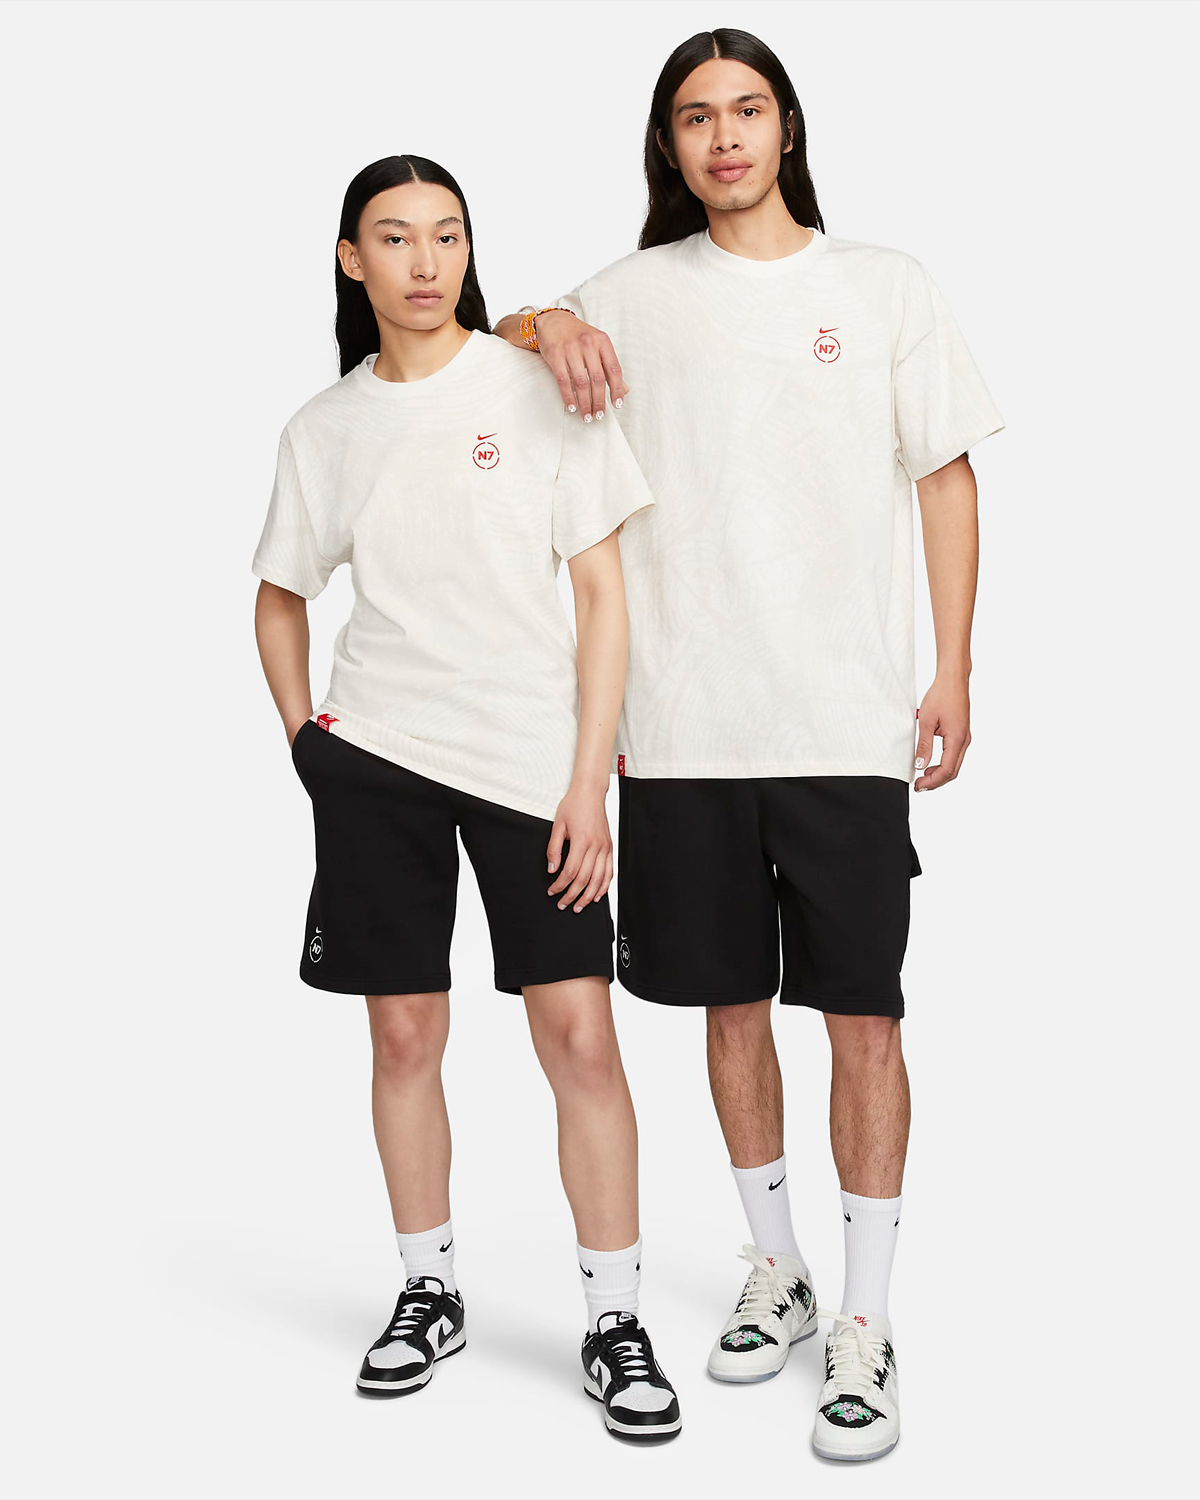 Nike-SB-Dunk-Low-N7-Clothing